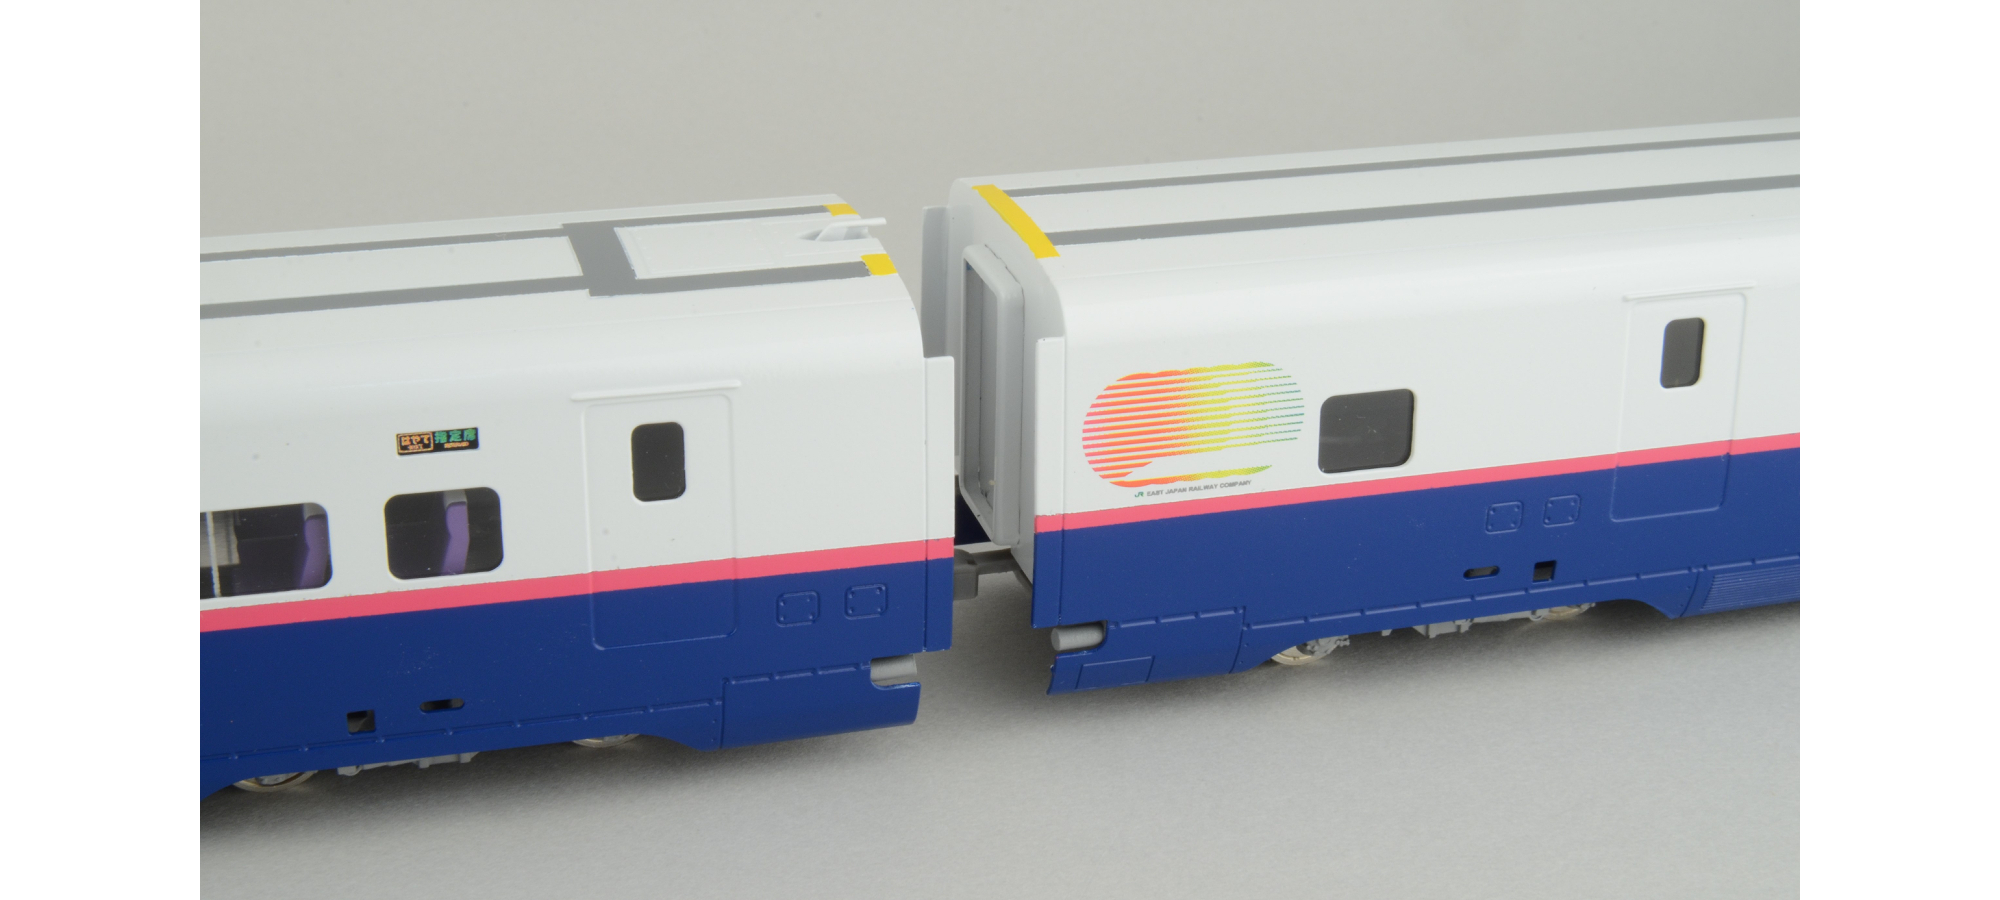 カツミ完成品 E-2新幹線「あさま」8連 - 鉄道模型